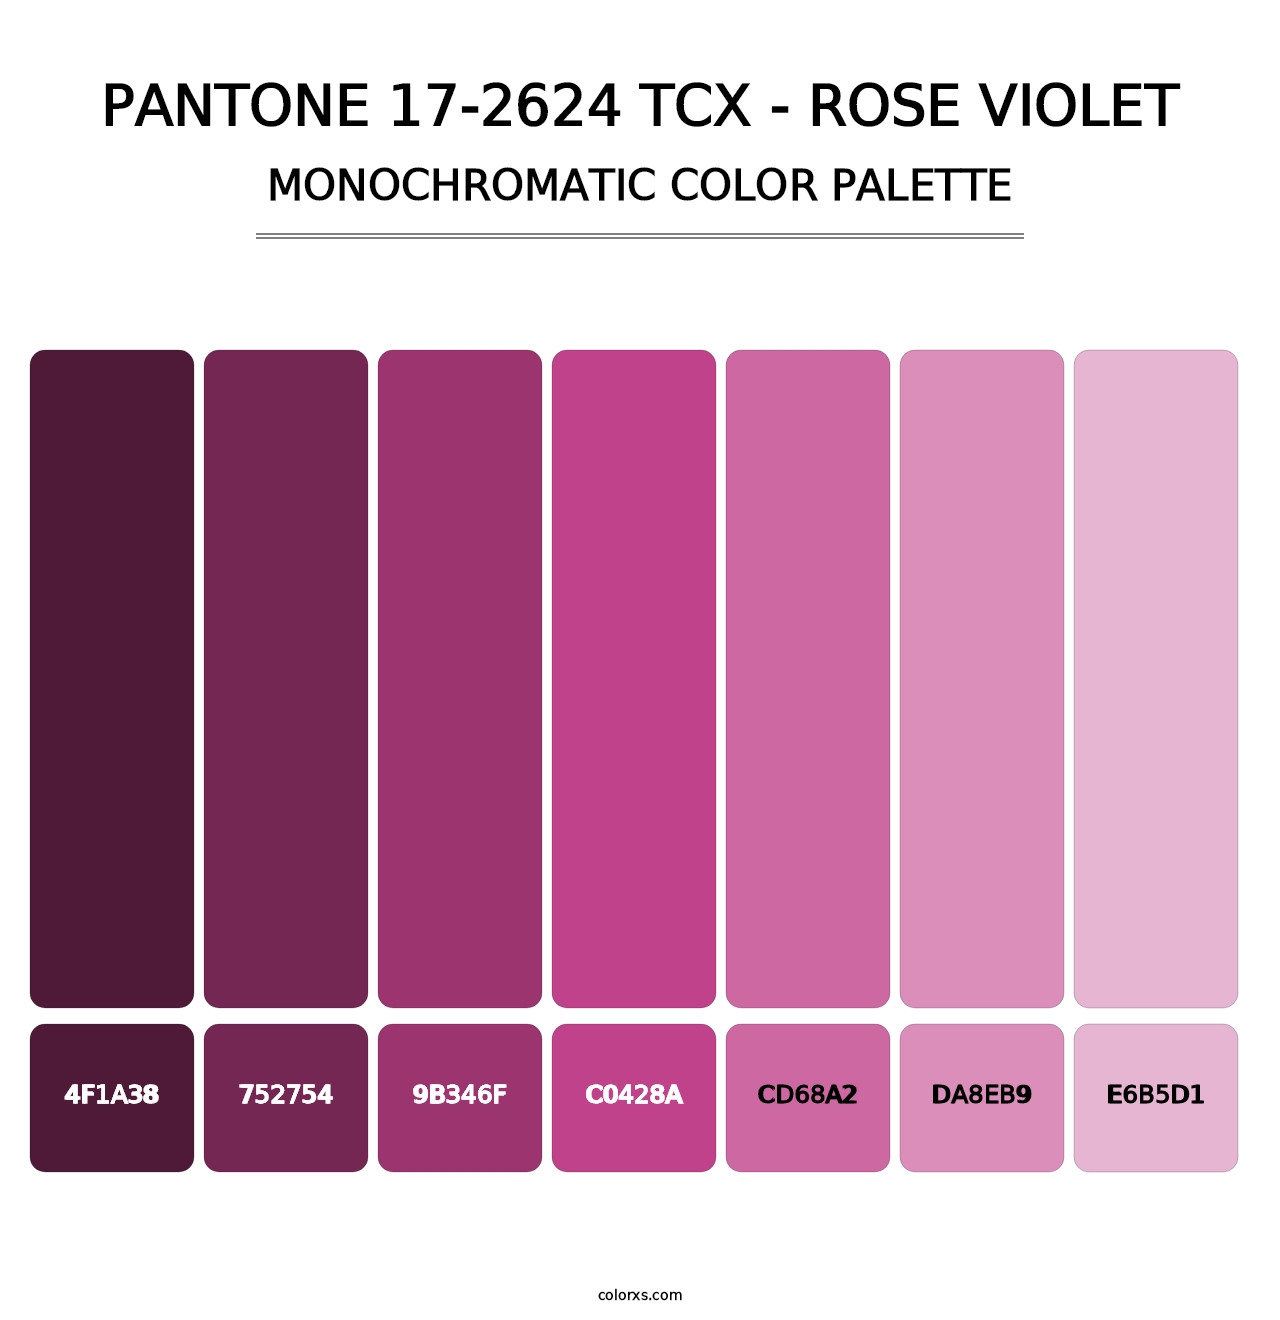 PANTONE 17-2624 TCX - Rose Violet - Monochromatic Color Palette